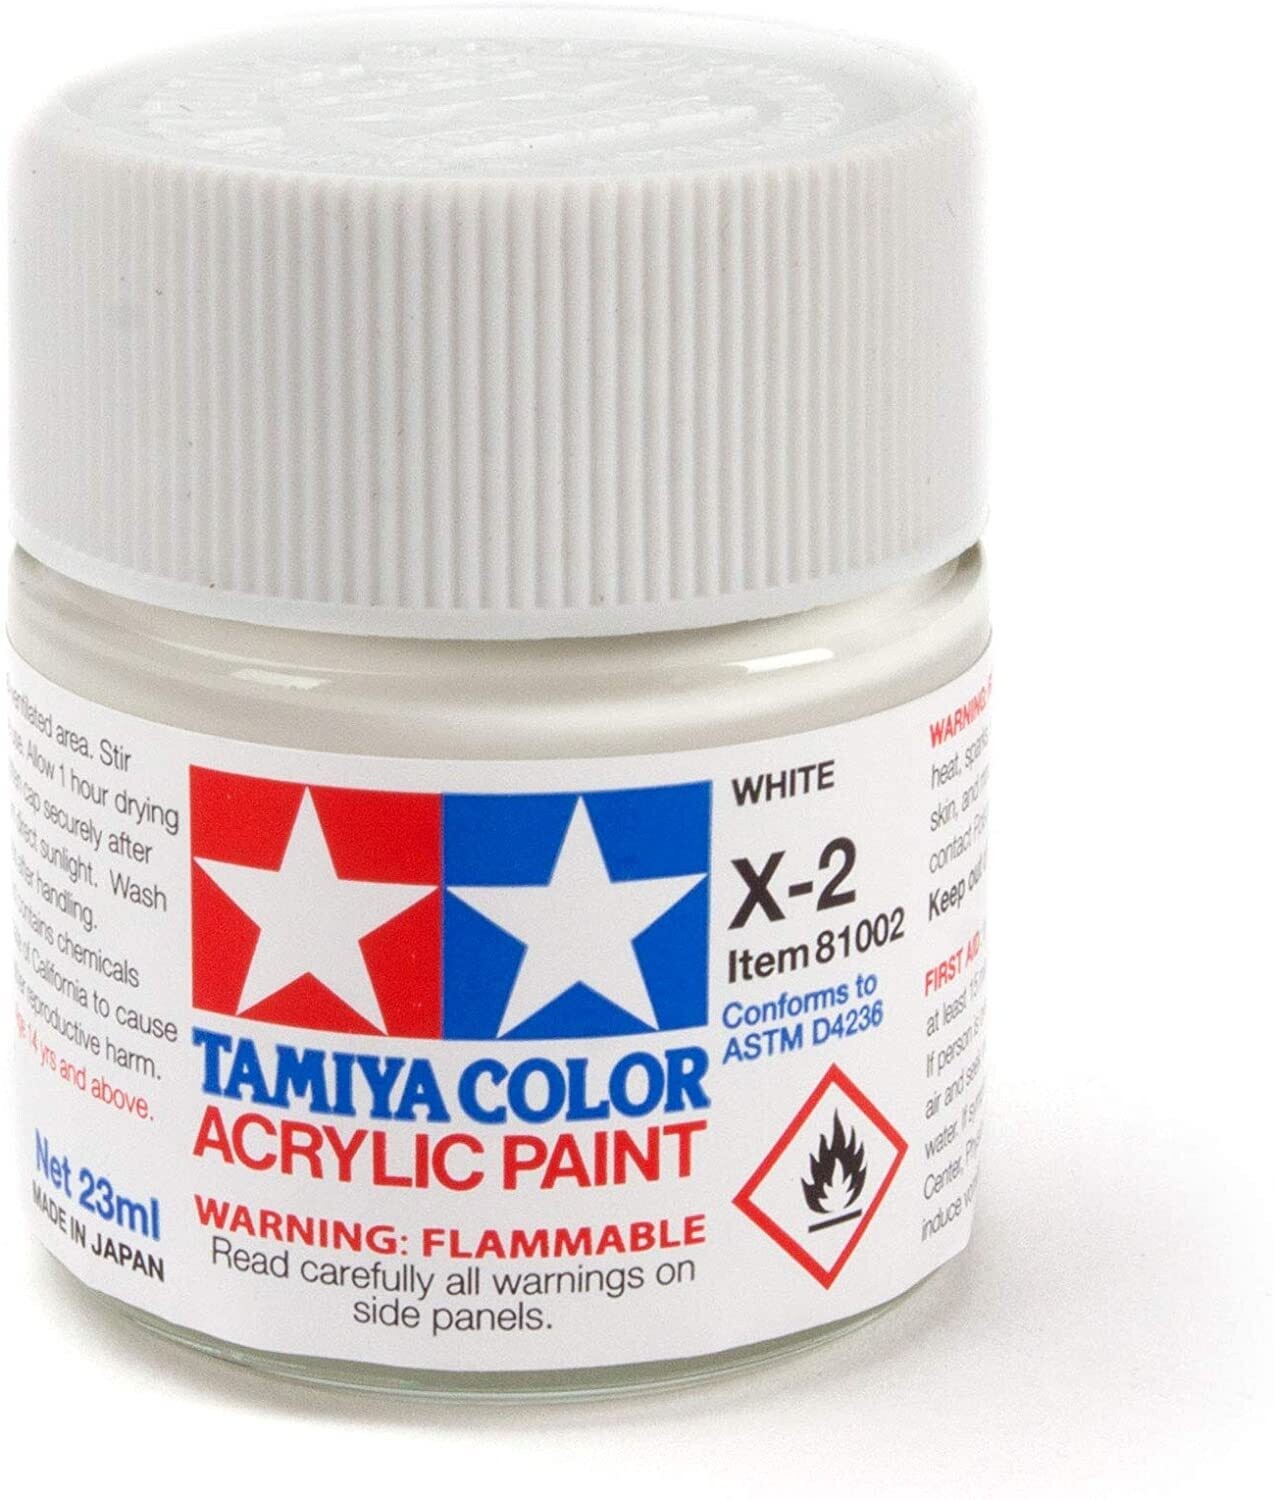 Tamiya Acrylic X-2 White Paint